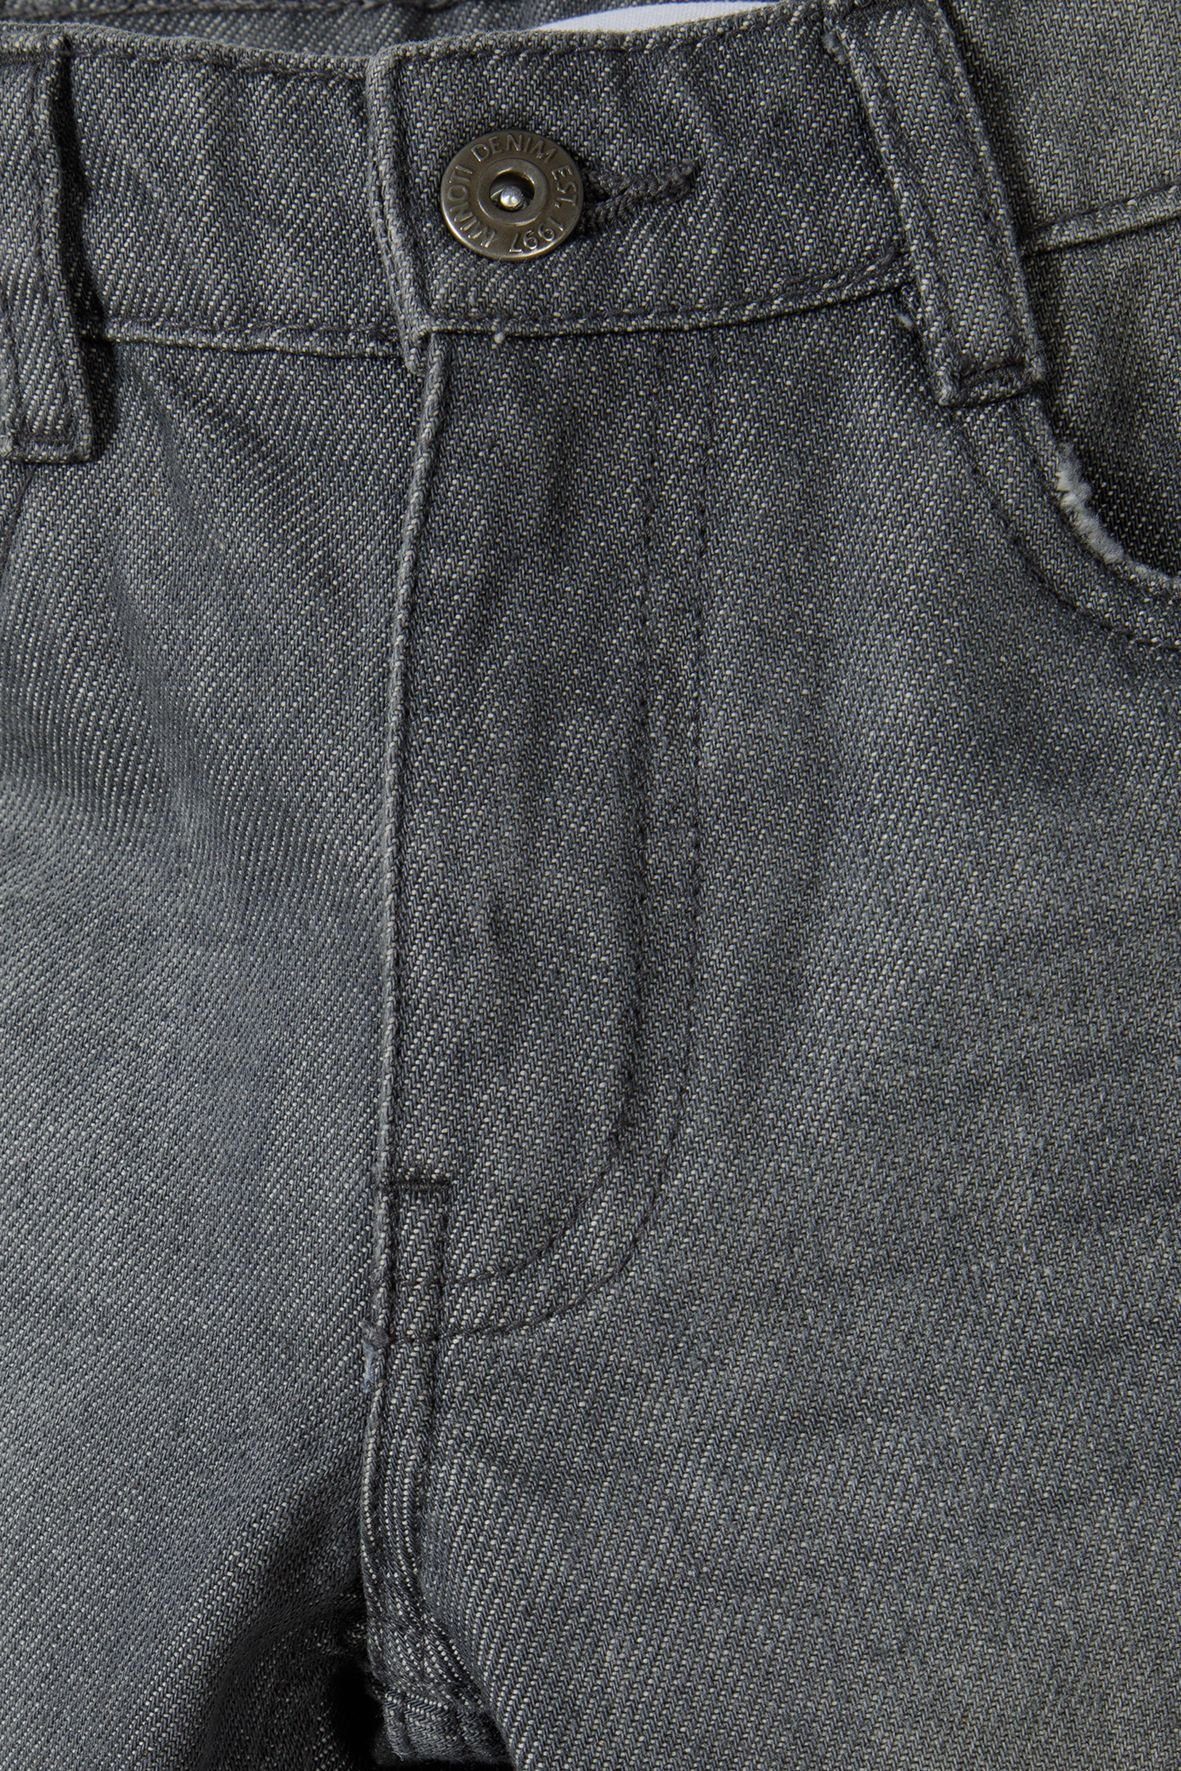 geradem (12m-14y) Relax-fit-Jeans Bein mit Grau MINOTI